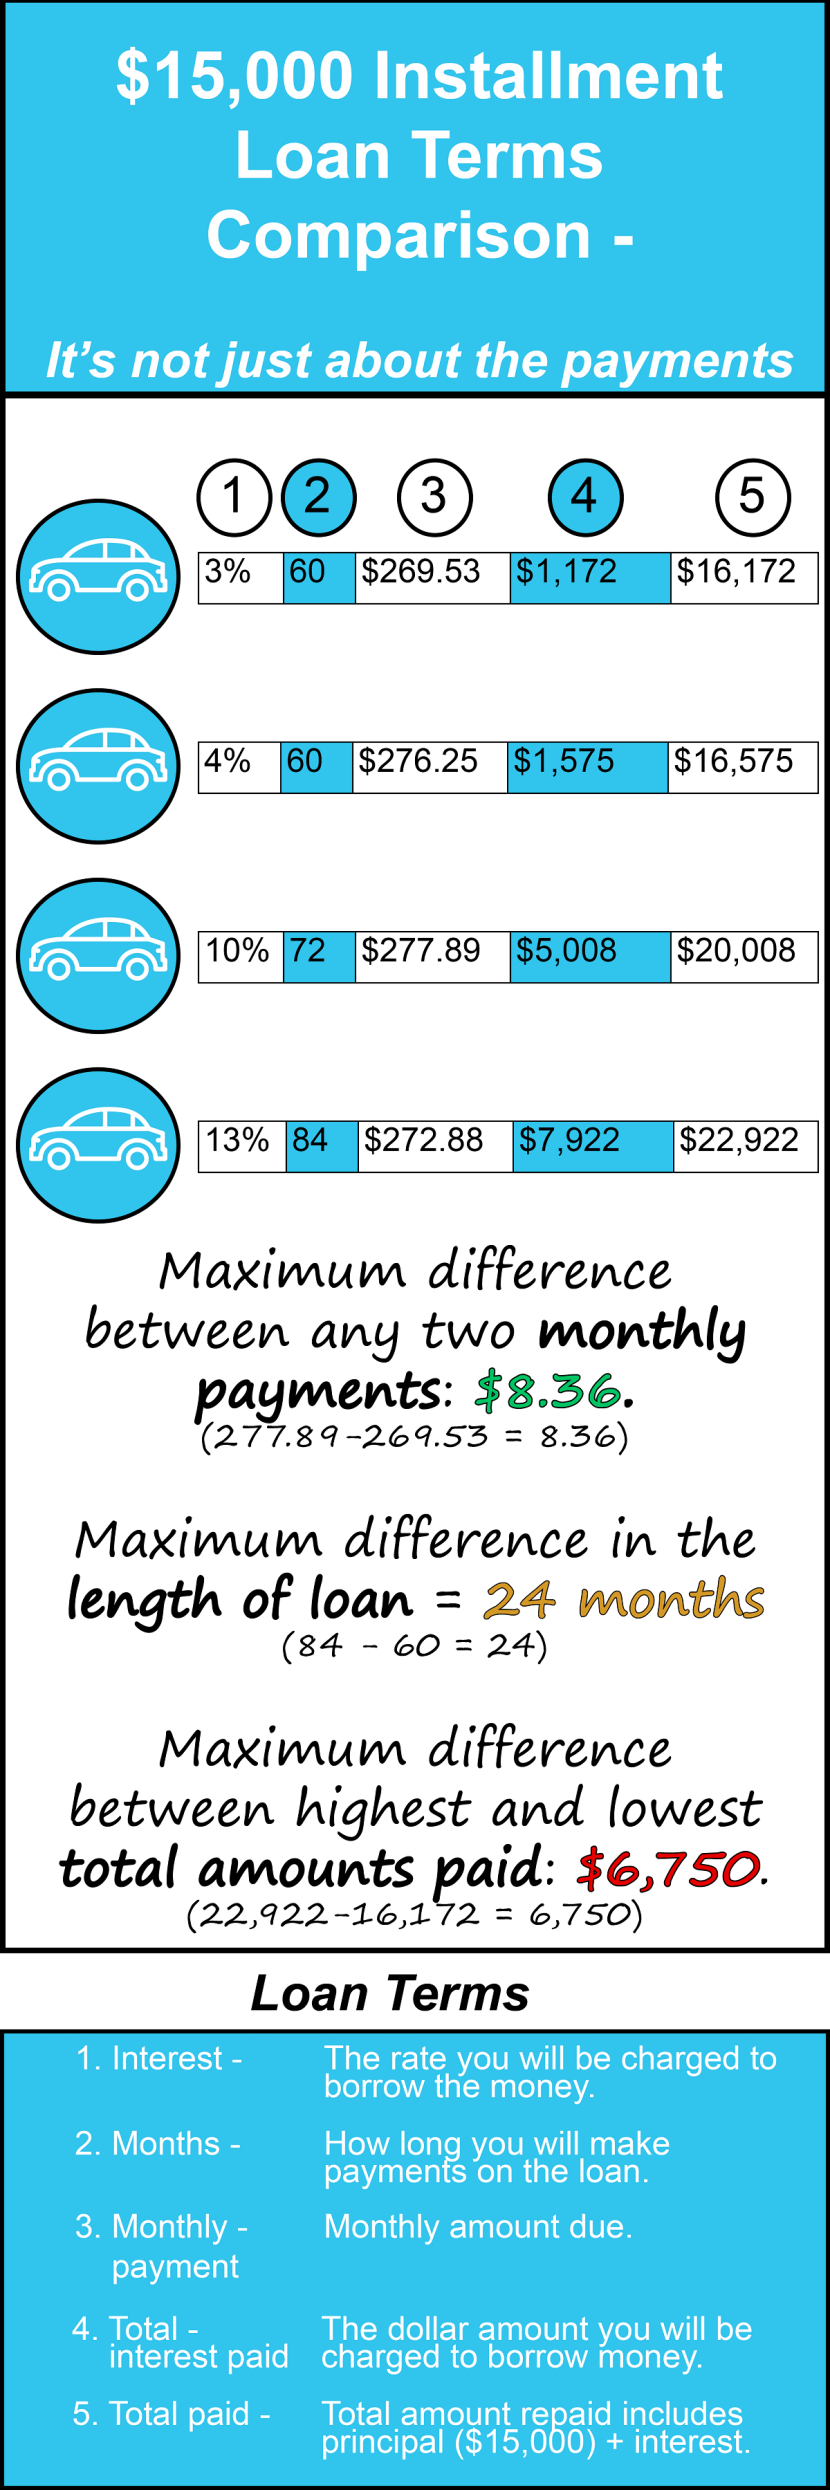 Installment Loan Terms: A Comparison